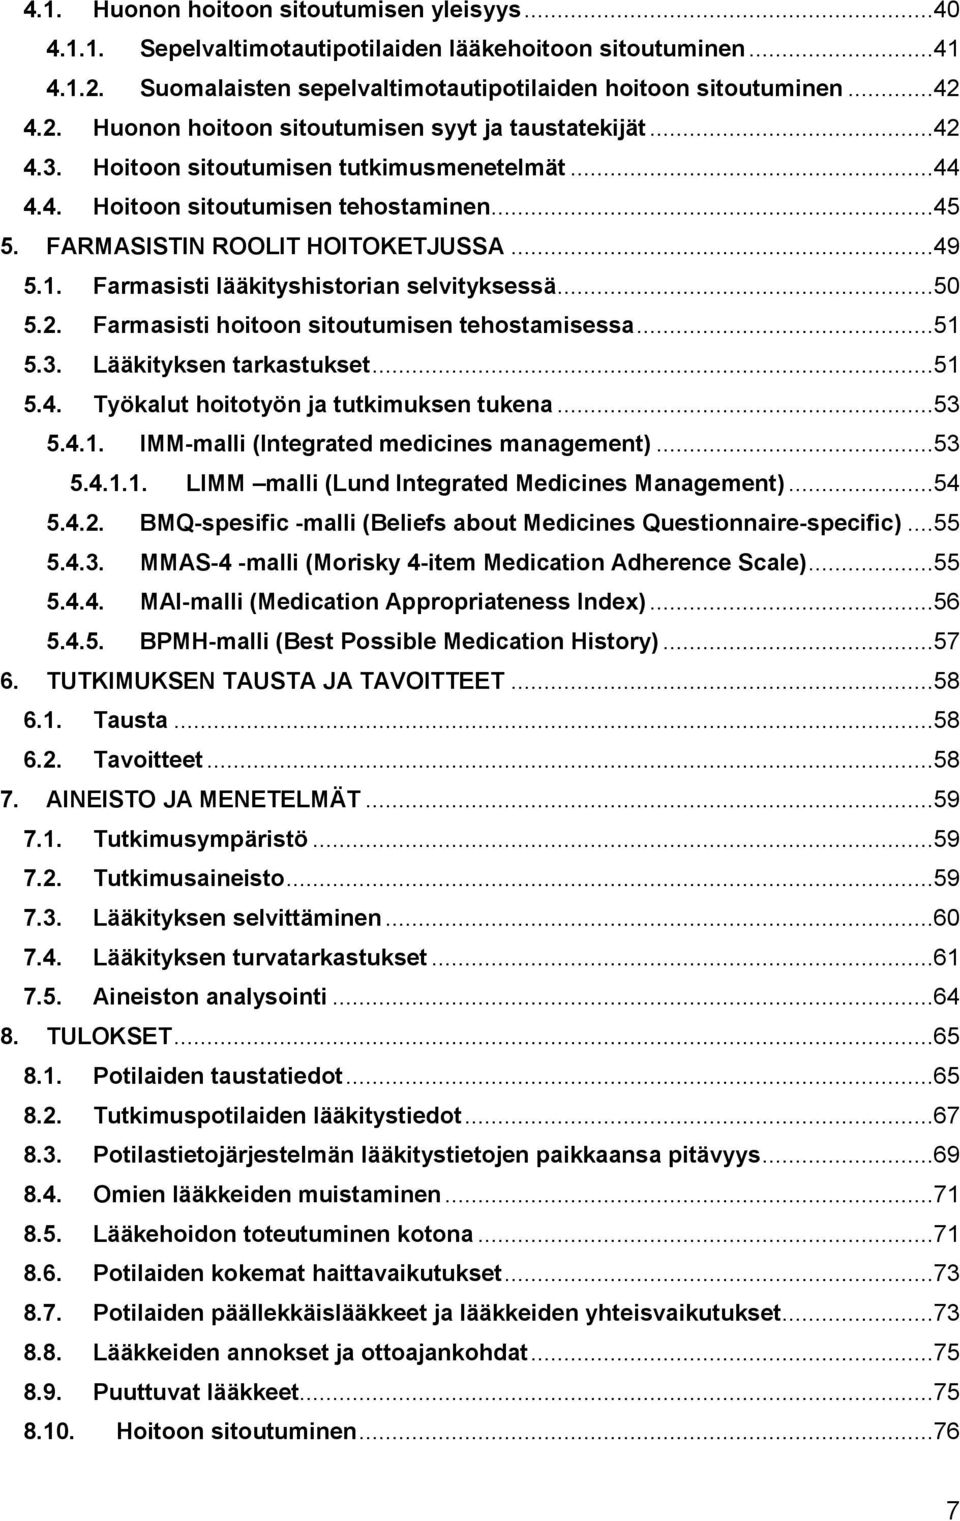 ..51 5.3. Lääkityksen tarkastukset...51 5.4. Työkalut hoitotyön ja tutkimuksen tukena...53 5.4.1. IMM-malli (Integrated medicines management)...53 5.4.1.1. LIMM malli (Lund Integrated Medicines Management).